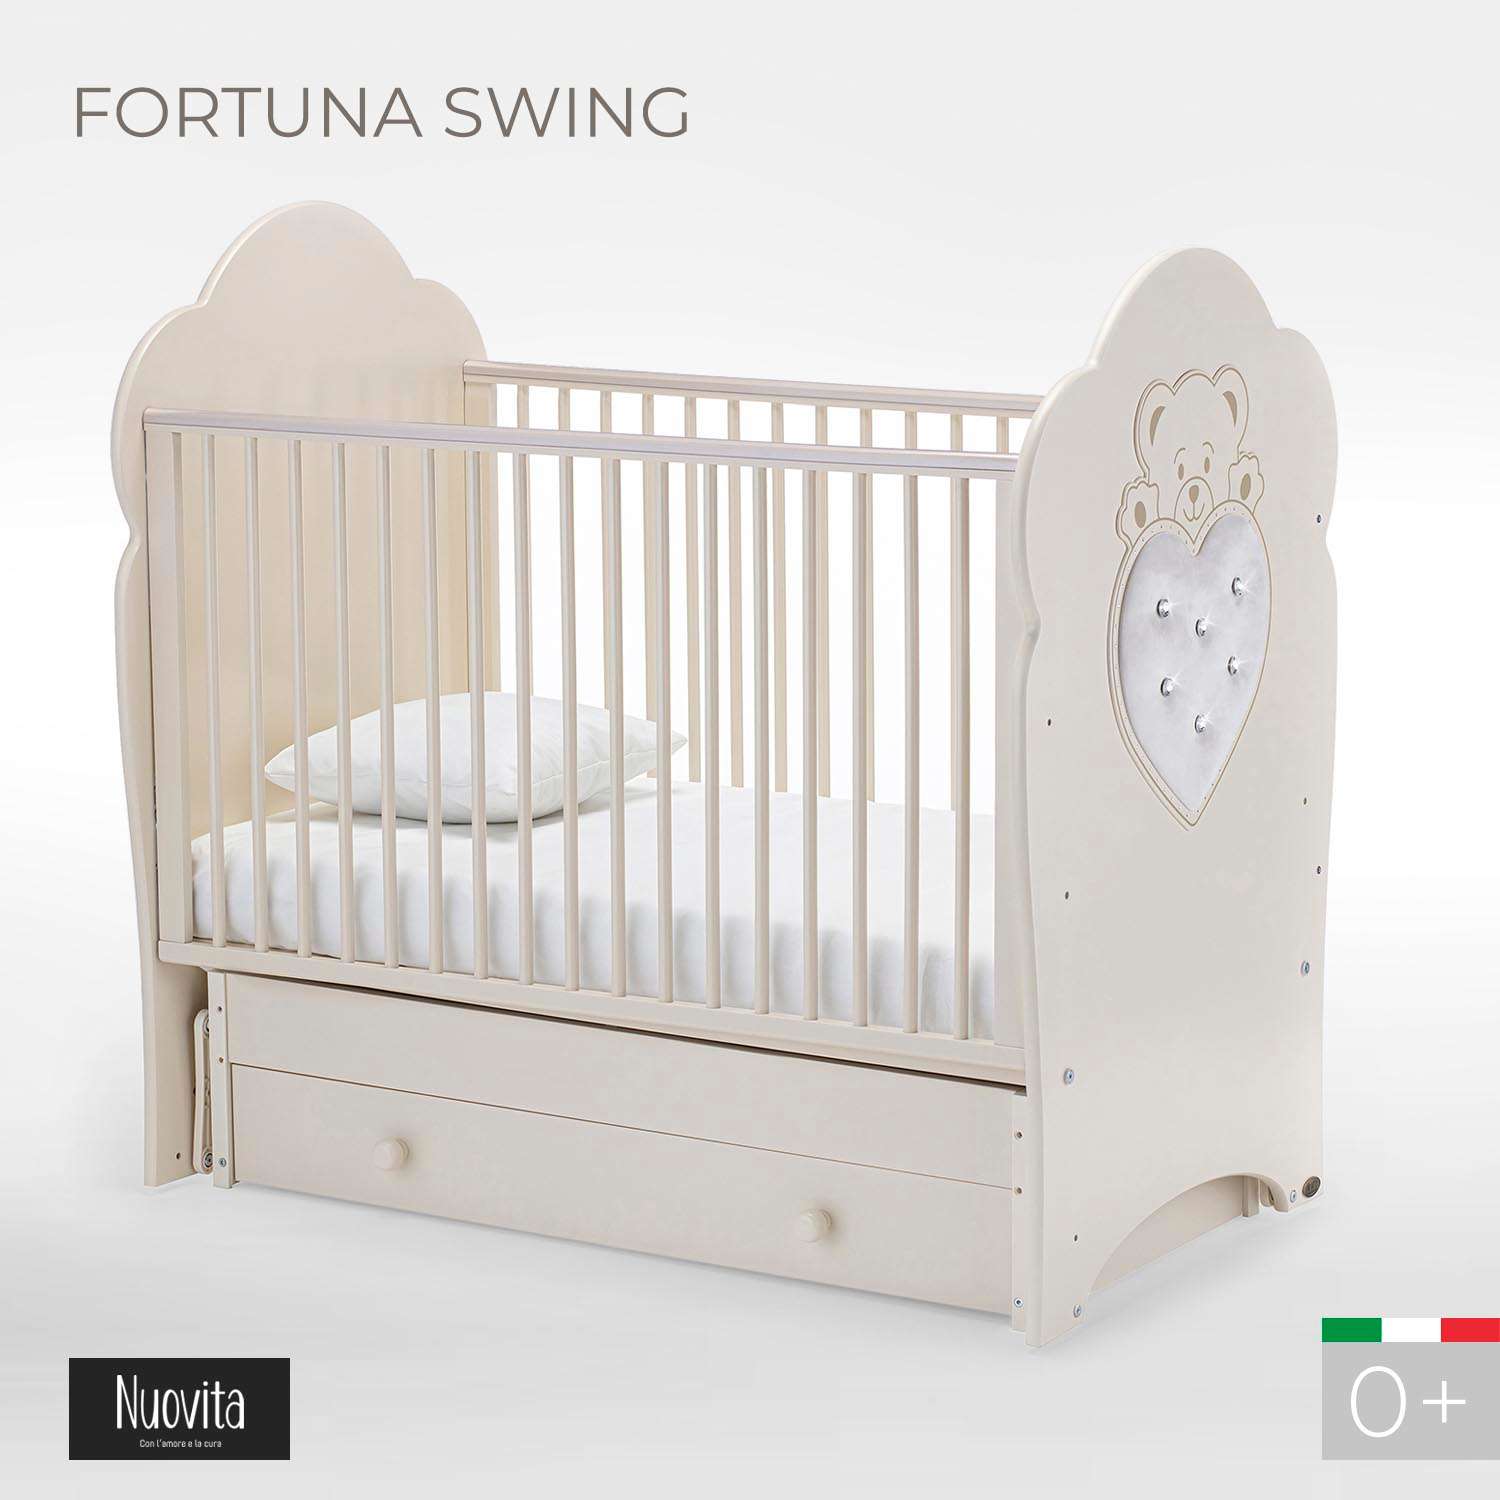 Детская кроватка Nuovita Fortuna Swing прямоугольная, поперечный маятник (слоновая кость) - фото 2